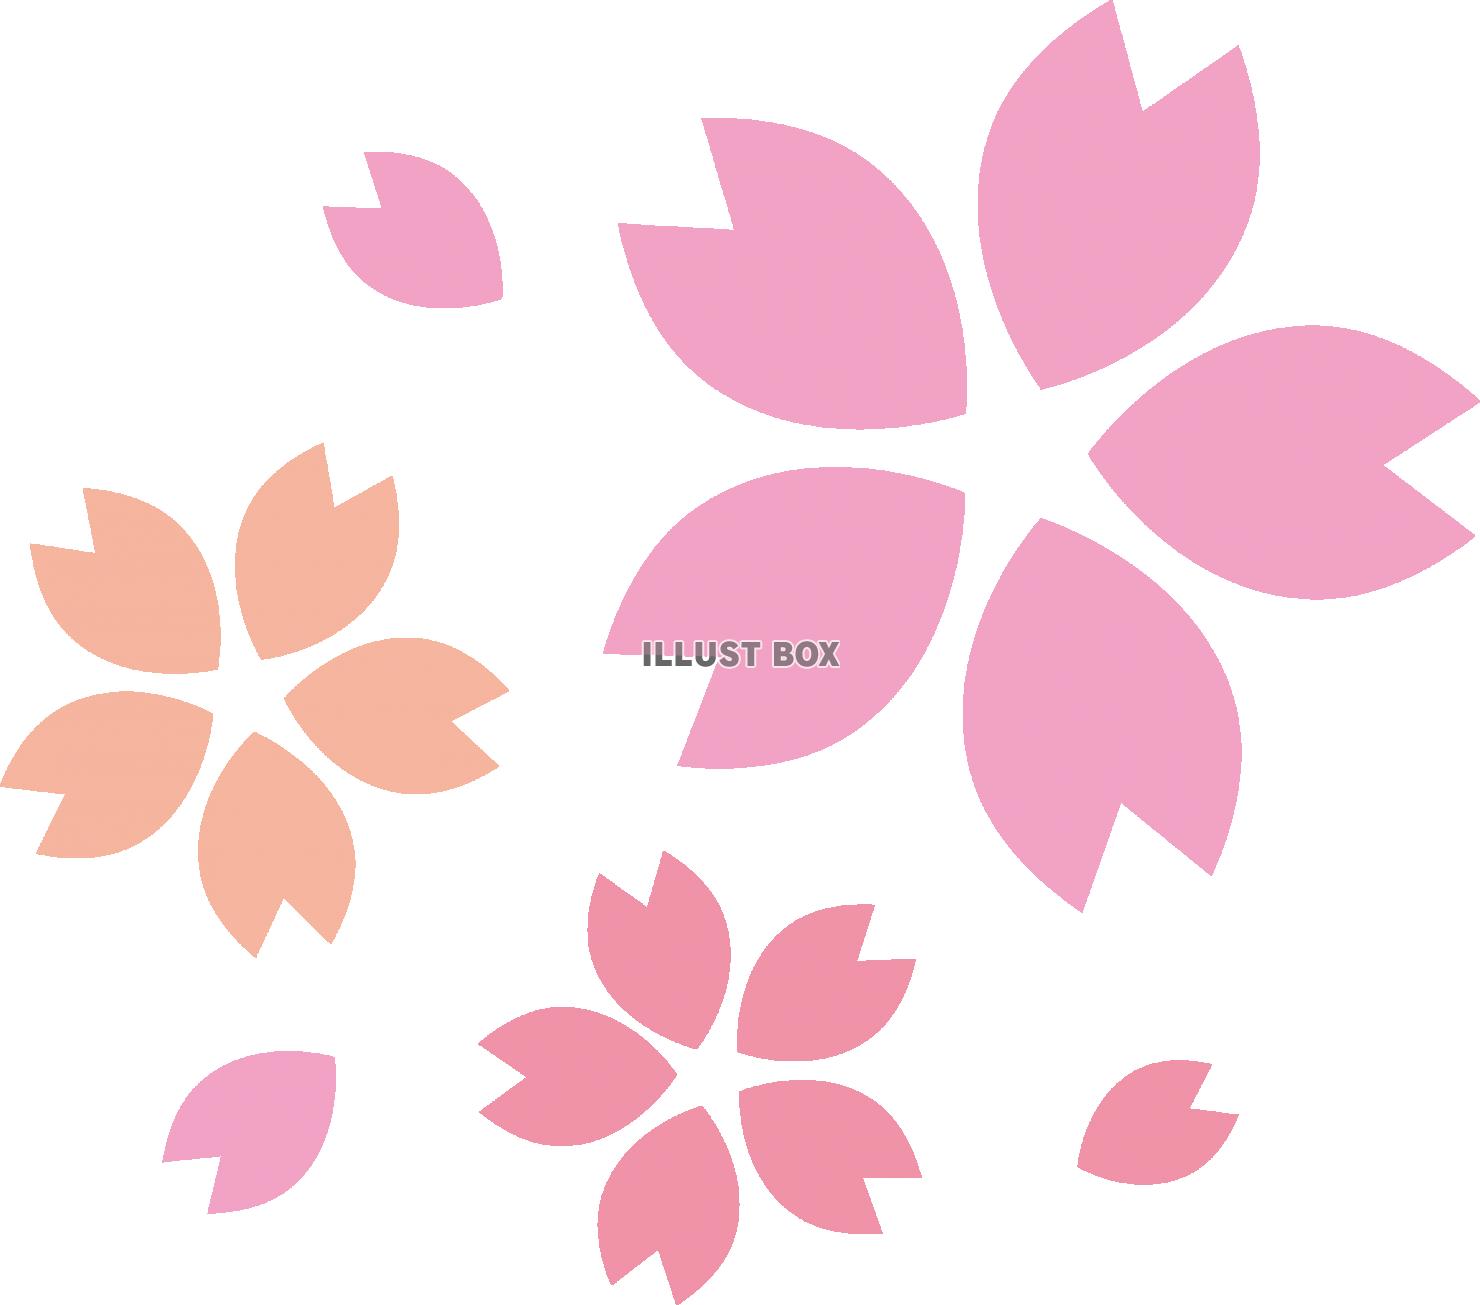 イラスト 桜の 花びら 和風の桜の花びらの背景もフリー無料素材の画像をダウンロード